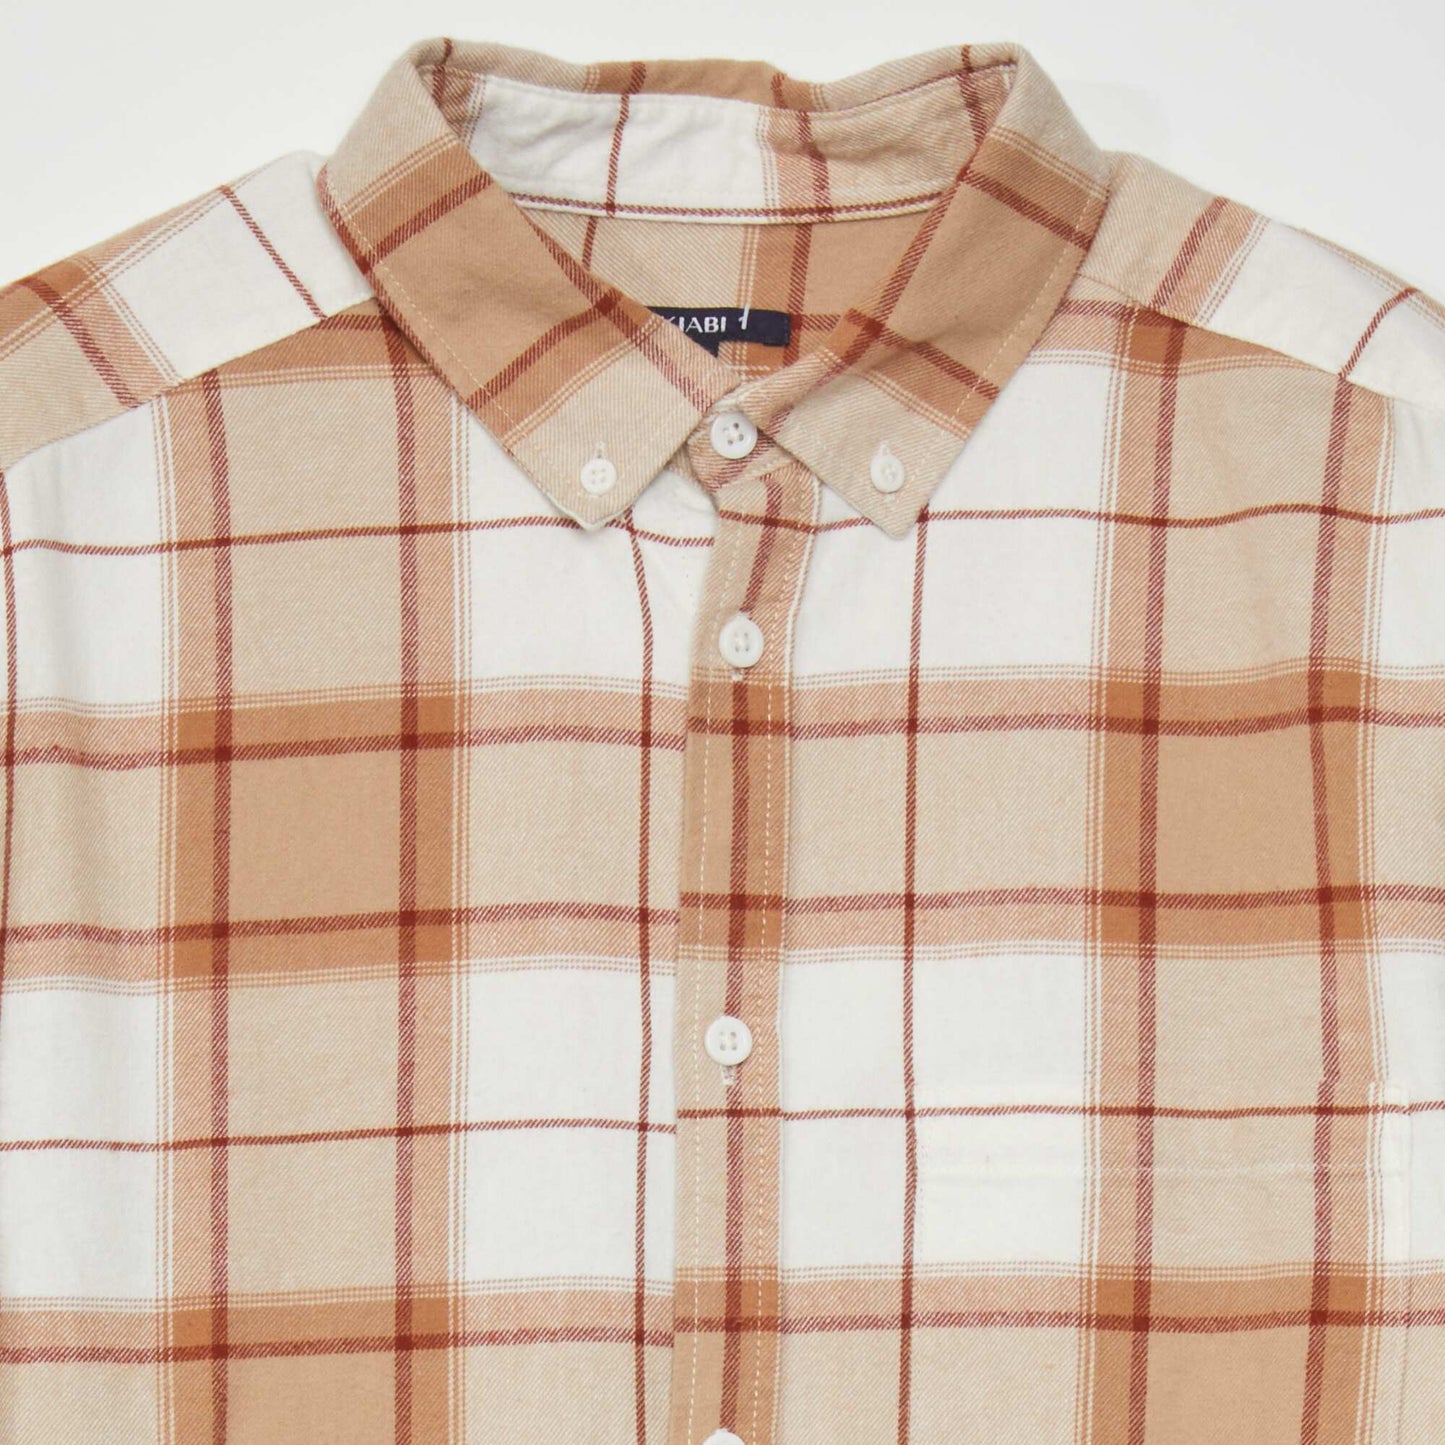 Straight flannel shirt Beige/brown